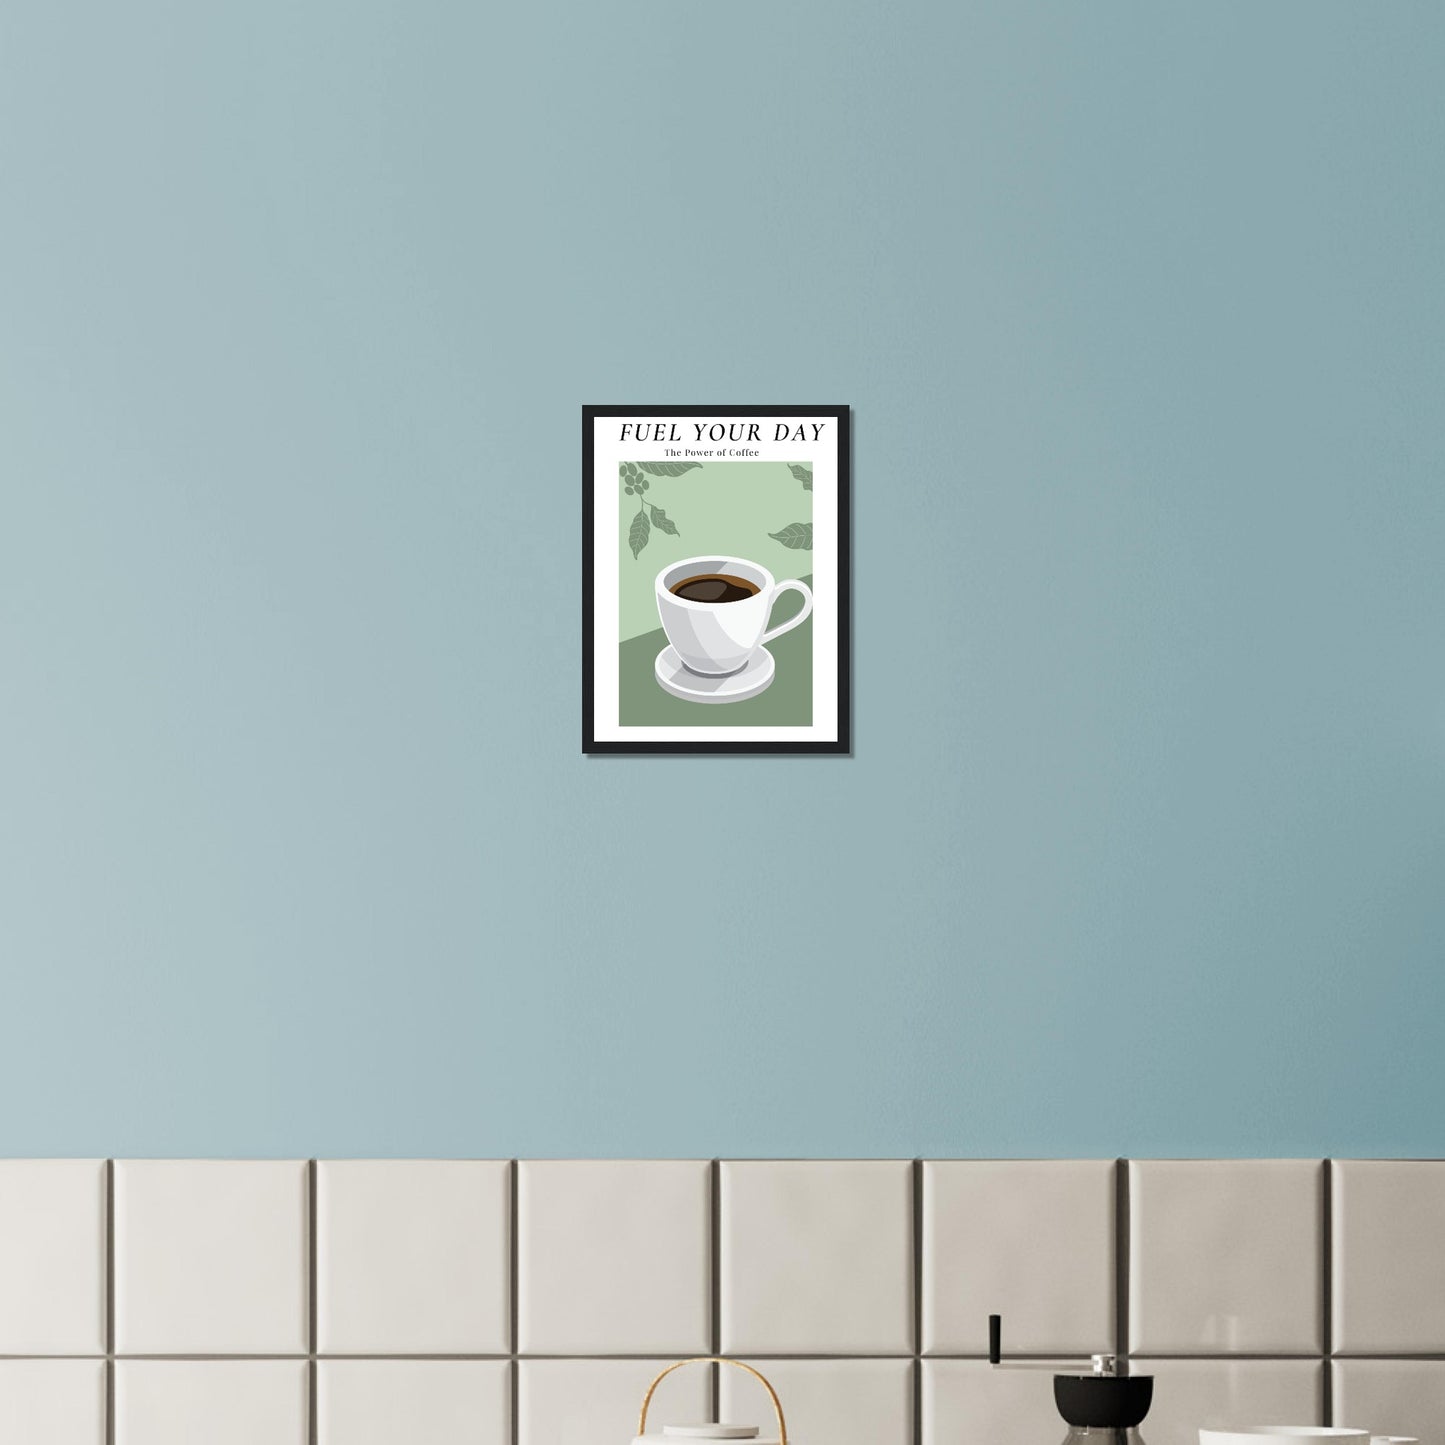 Ein Bild im Schwarzen Rahmen mit einer Tasse Kaffee auf einem Grünfarbigen Hintergrund mit Arabica Blätter als Akzente. Oben mittig des Bildes steht: "FUEL YOUR DAY" mit der Unterschrift "The Power of Coffee" über einer gefliesten Küchenwand.